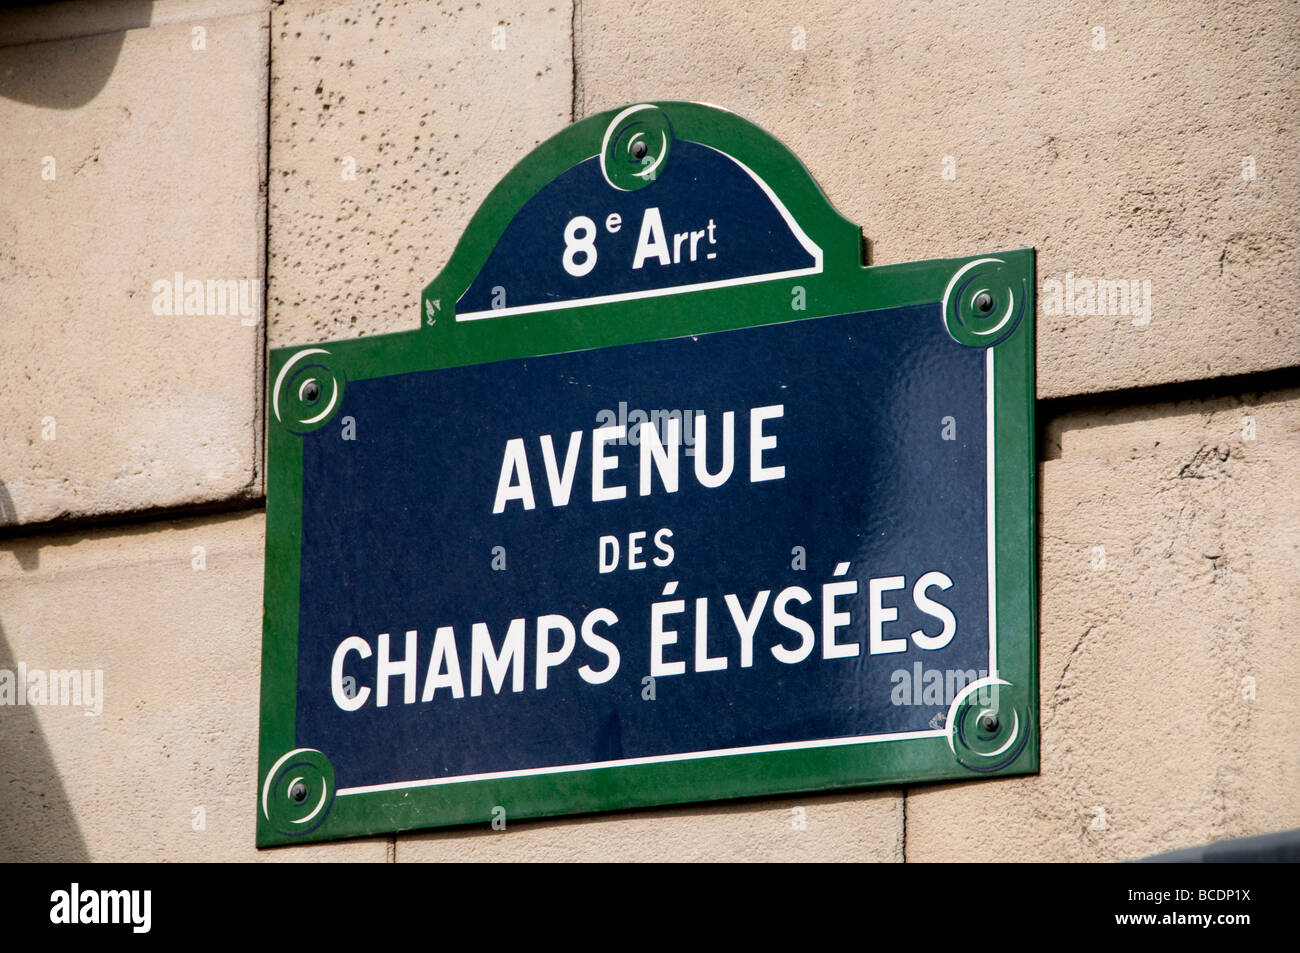 Anenue Des Champs Elysees Paris France Fashion Stock Photo